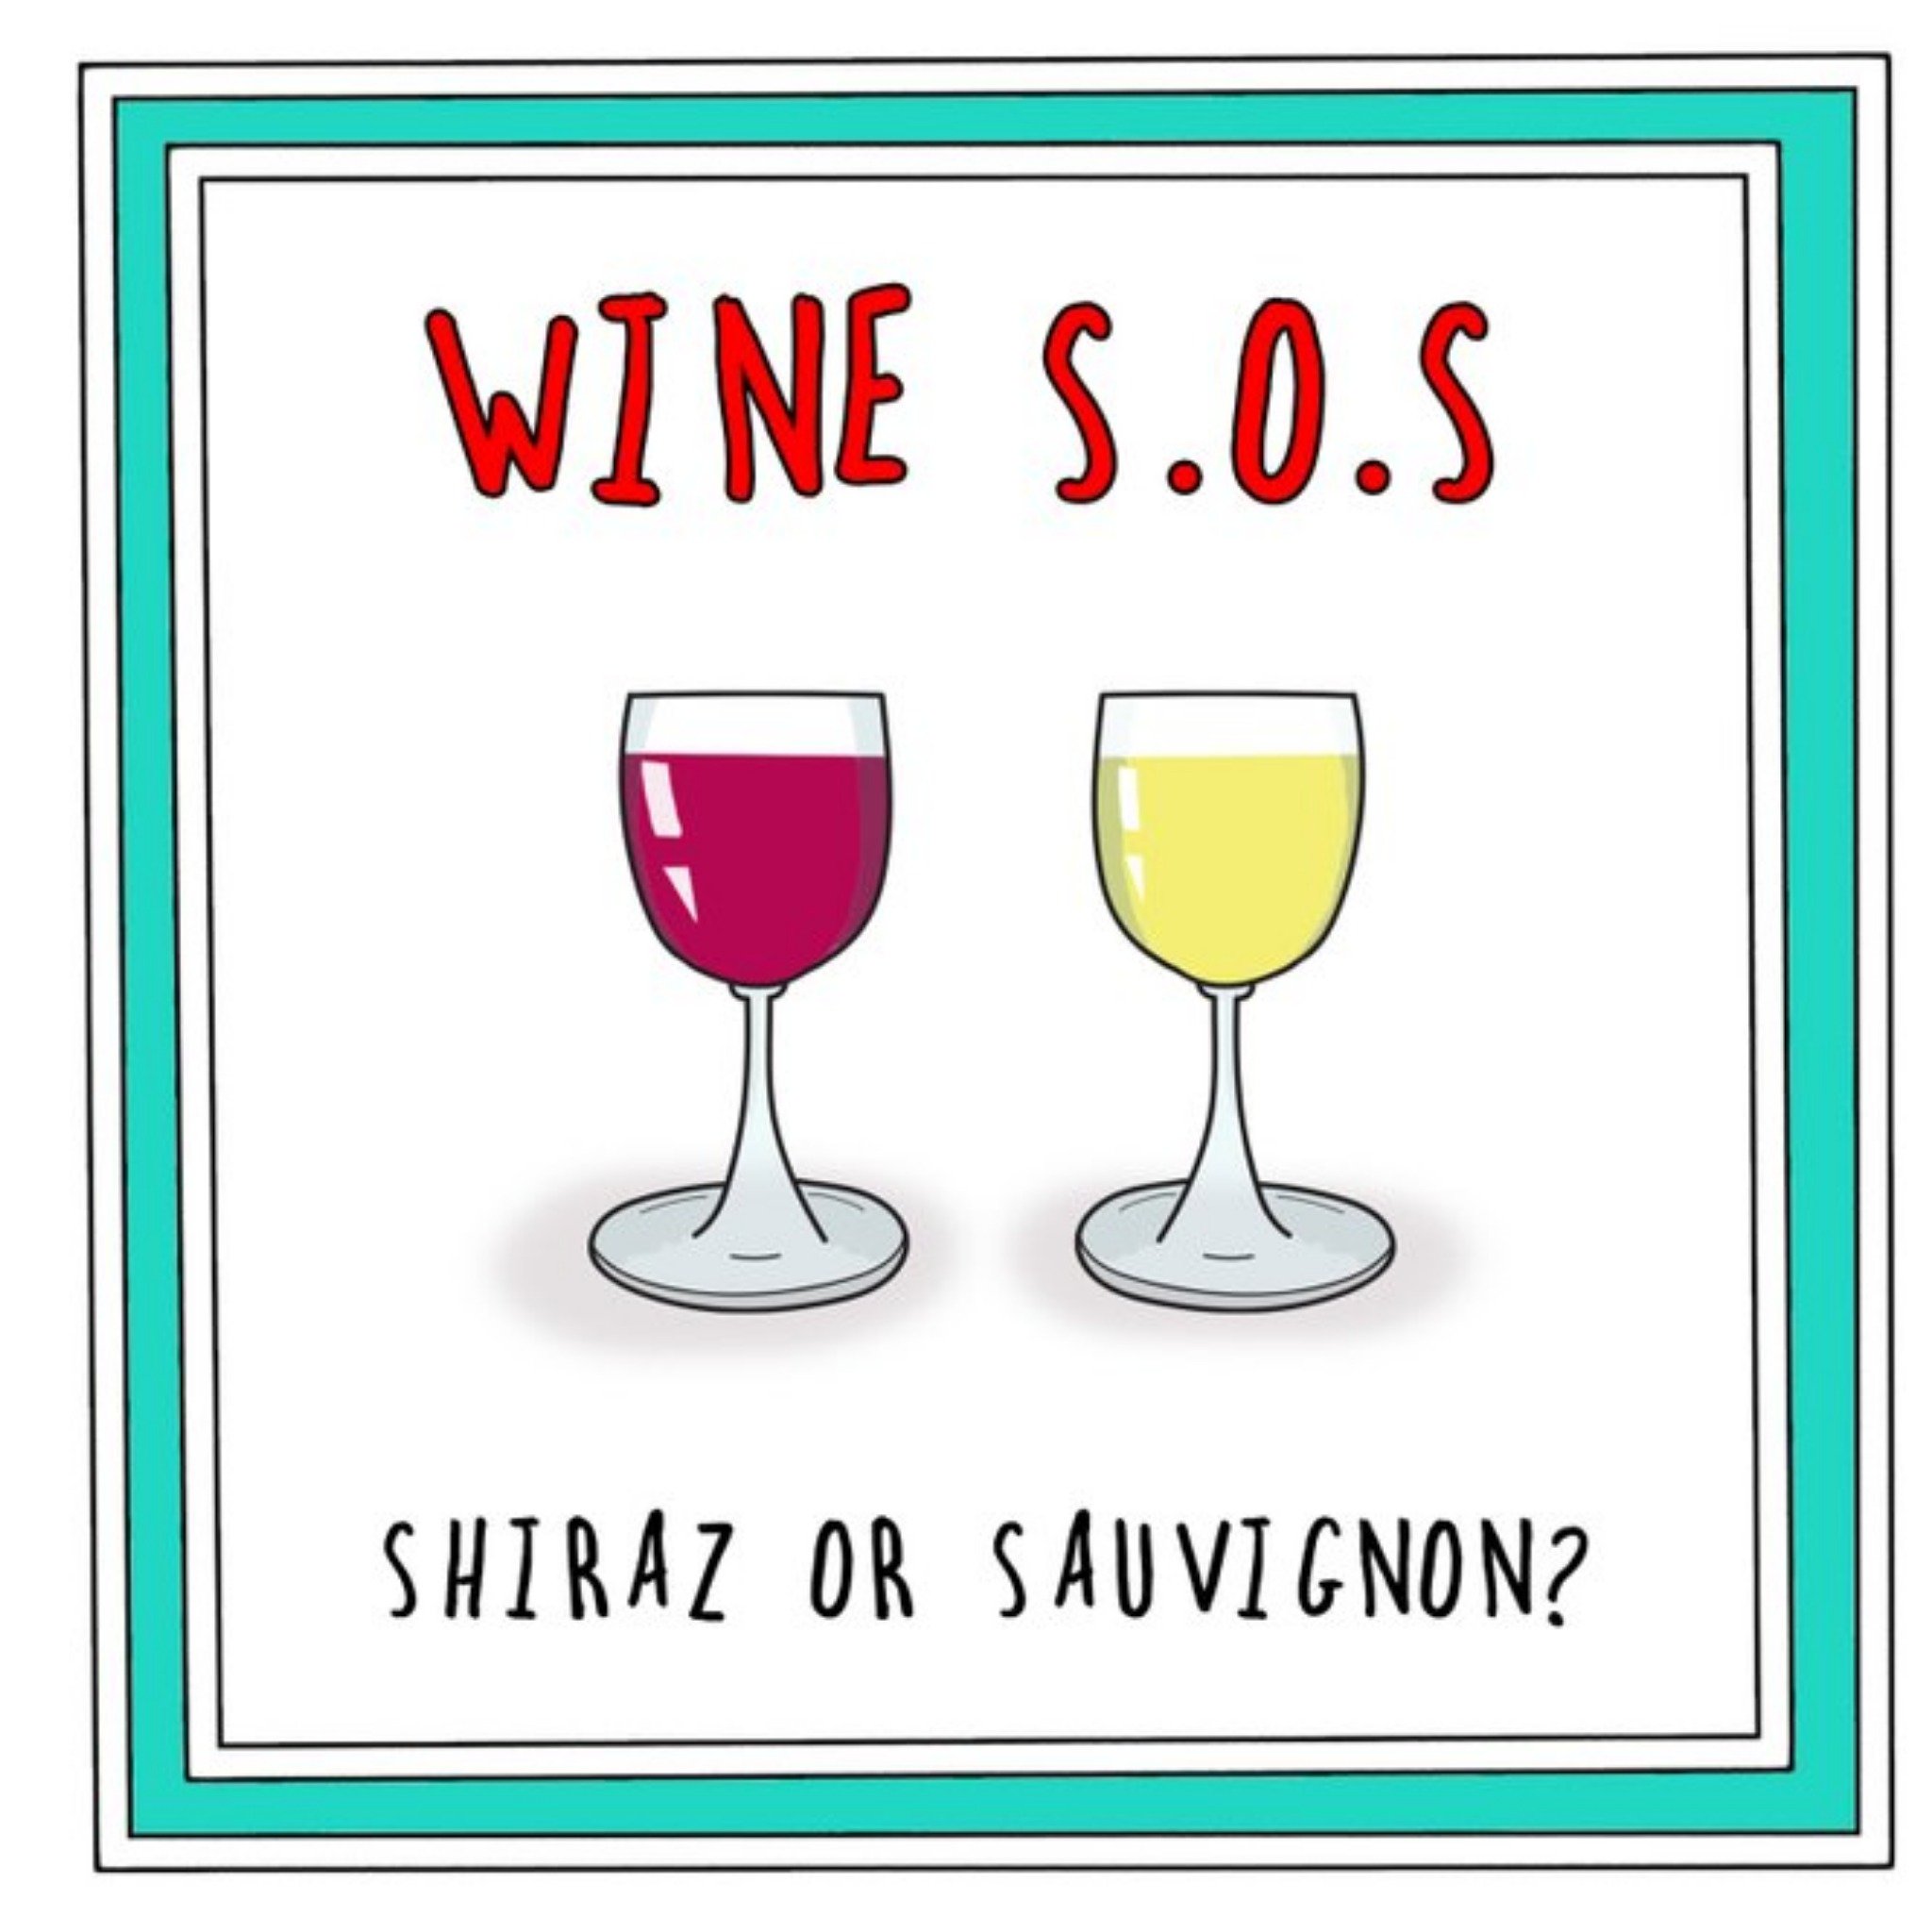 Go La La Funny Cheeky Wine Sos Shiraz Or Sauvignon Card, Large